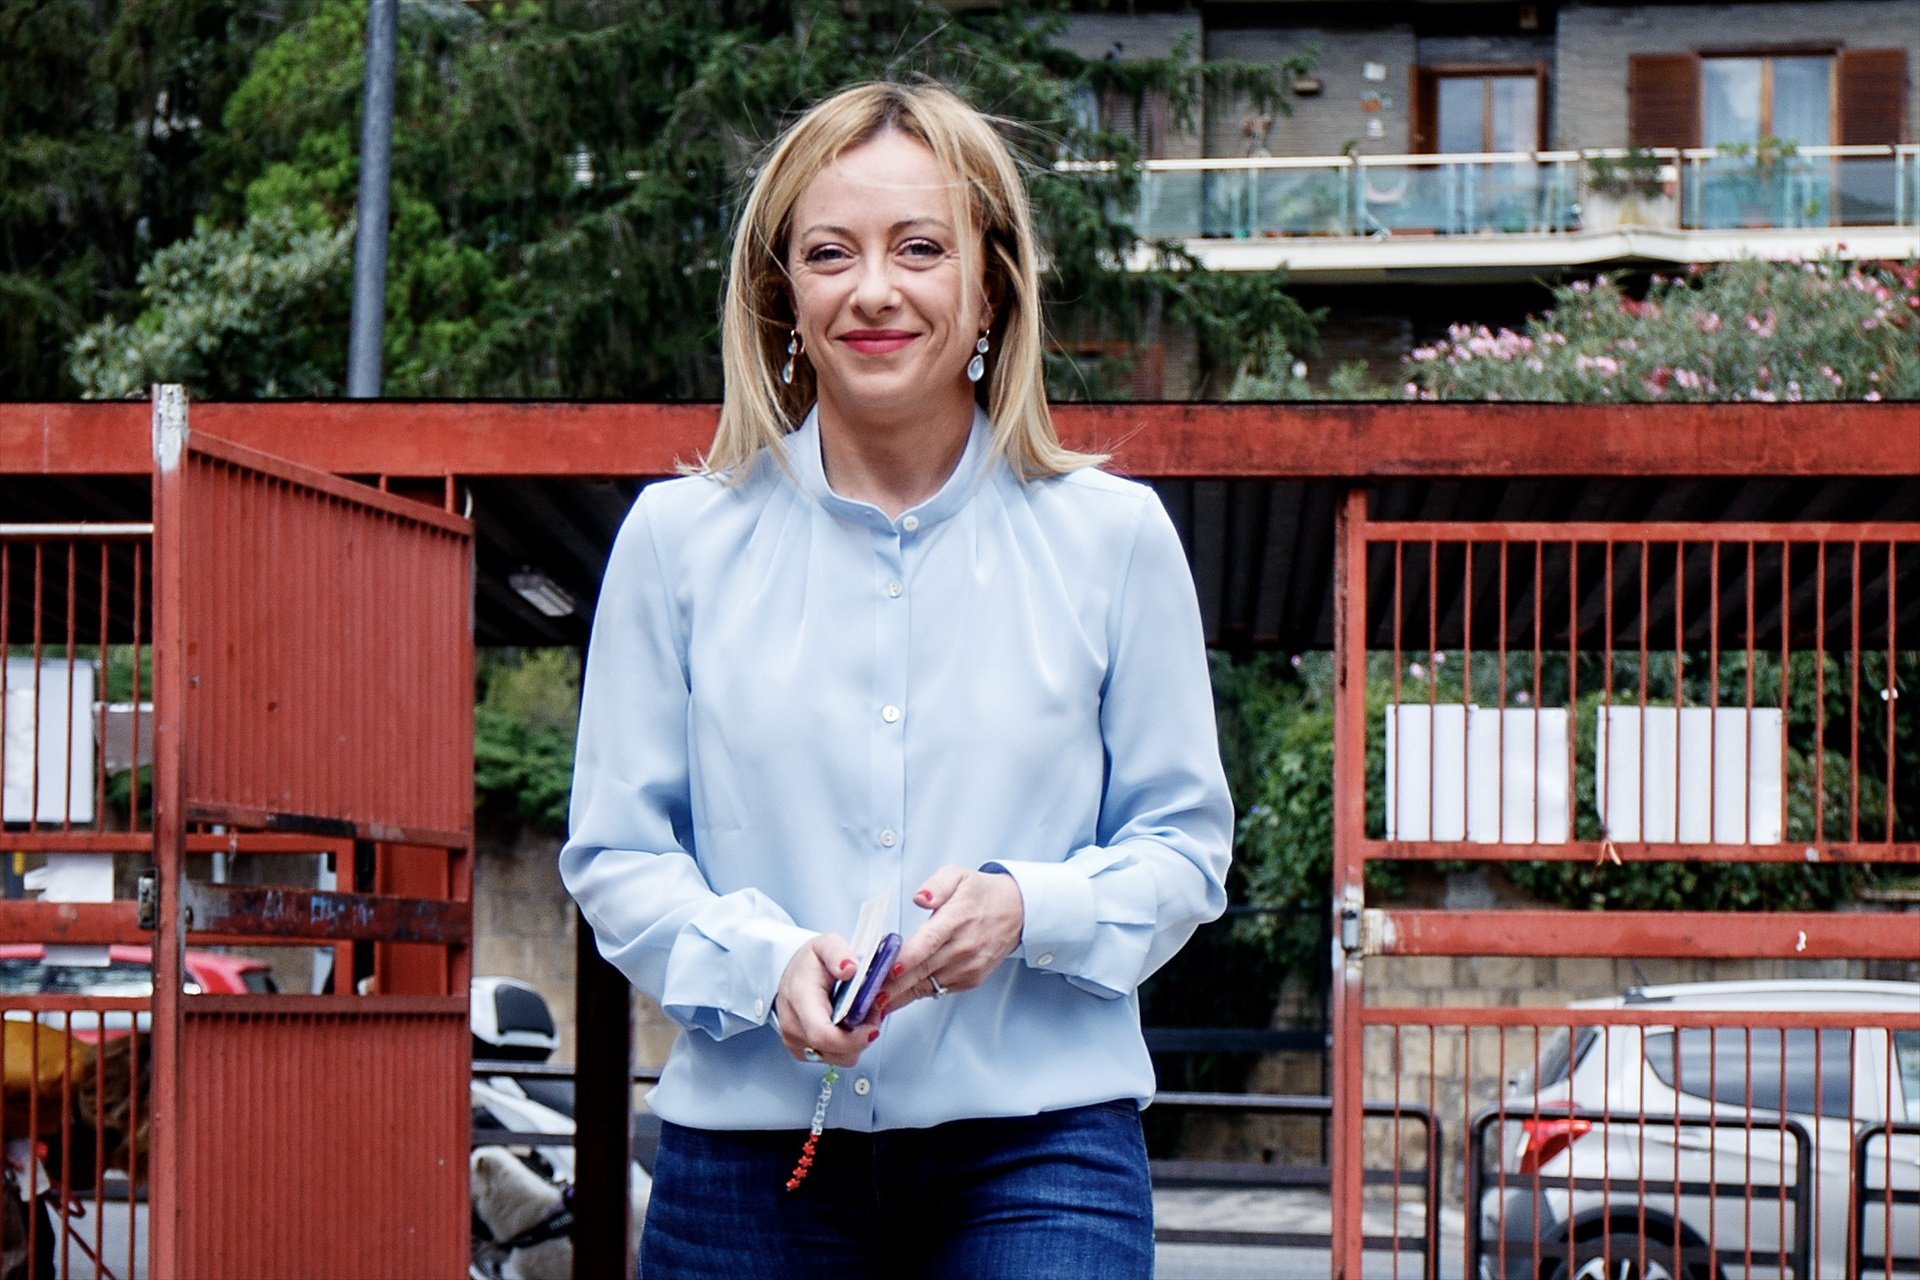 Qui és Giorgia Meloni, la ultradretana que podria guanyar les eleccions a Itàlia?